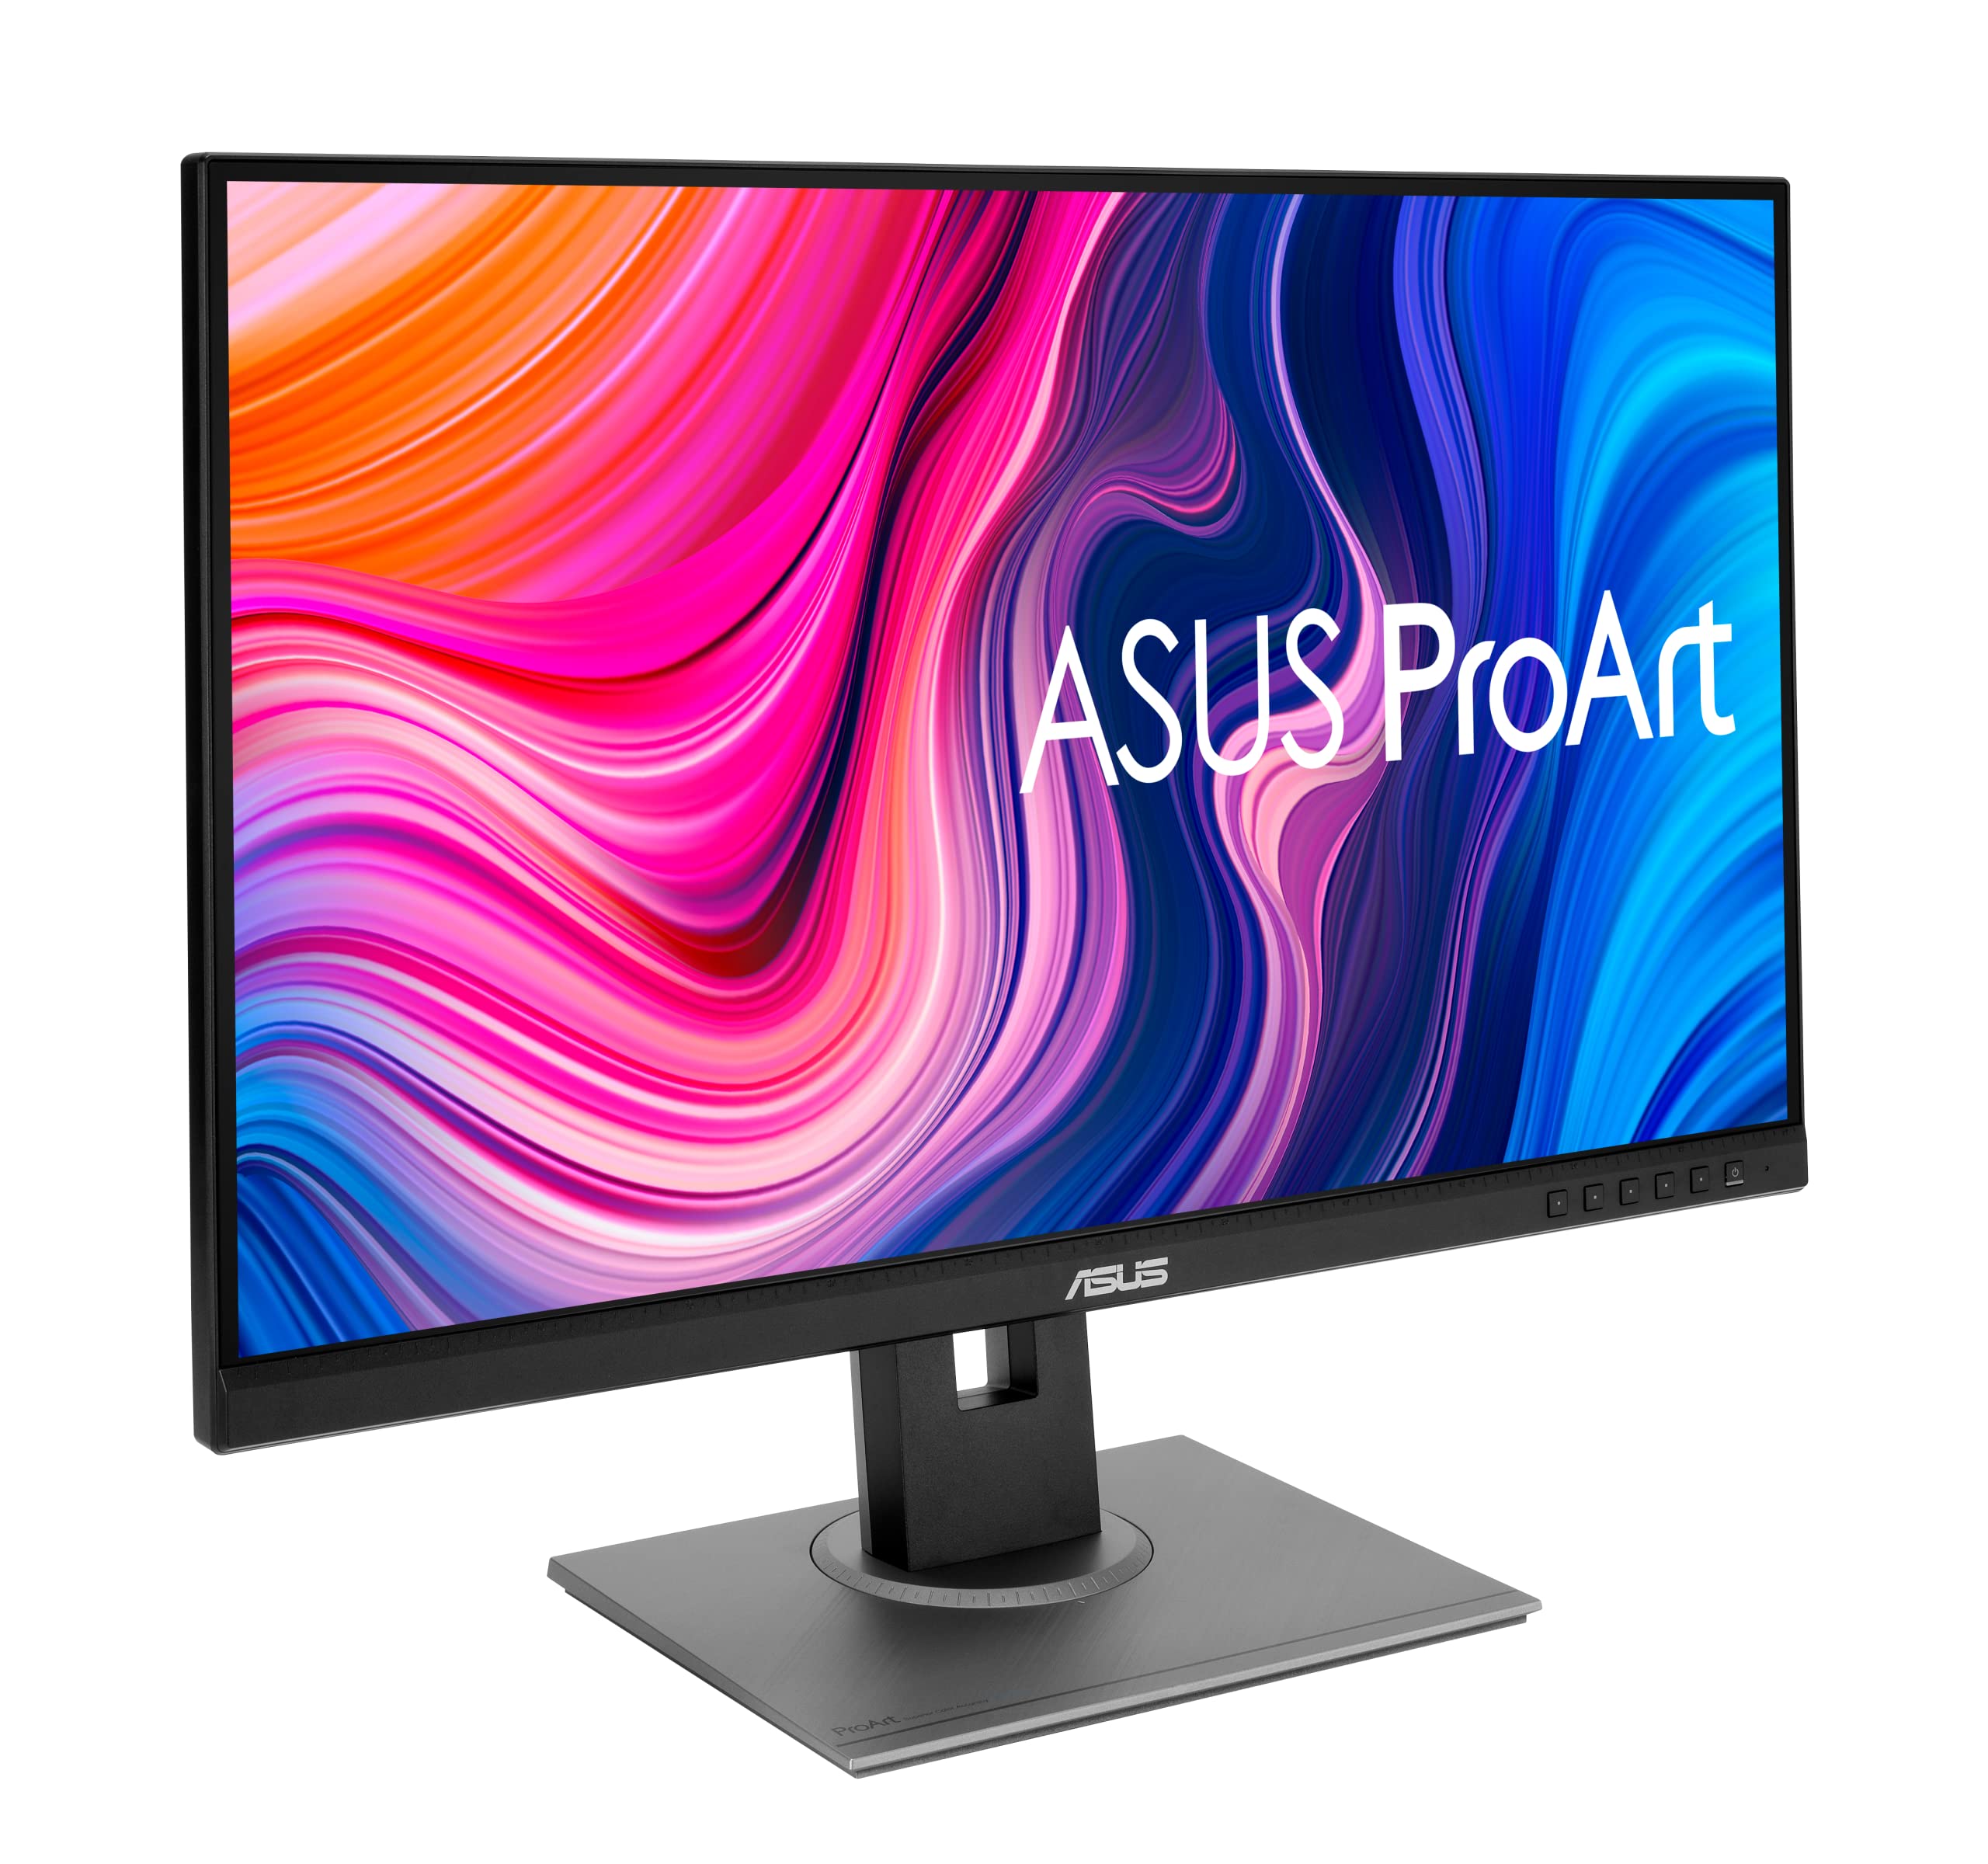 ASUS ProArt Display PA278QV 27” WQHD (2560 x 1440) Monitor, 100% sRGB/Rec. 709 ΔE  2, IPS, DisplayPort HDMI DVI-D Mini DP, Calman Verified, Anti-glare, Tilt Pivot Swivel Height Adjustable, Black